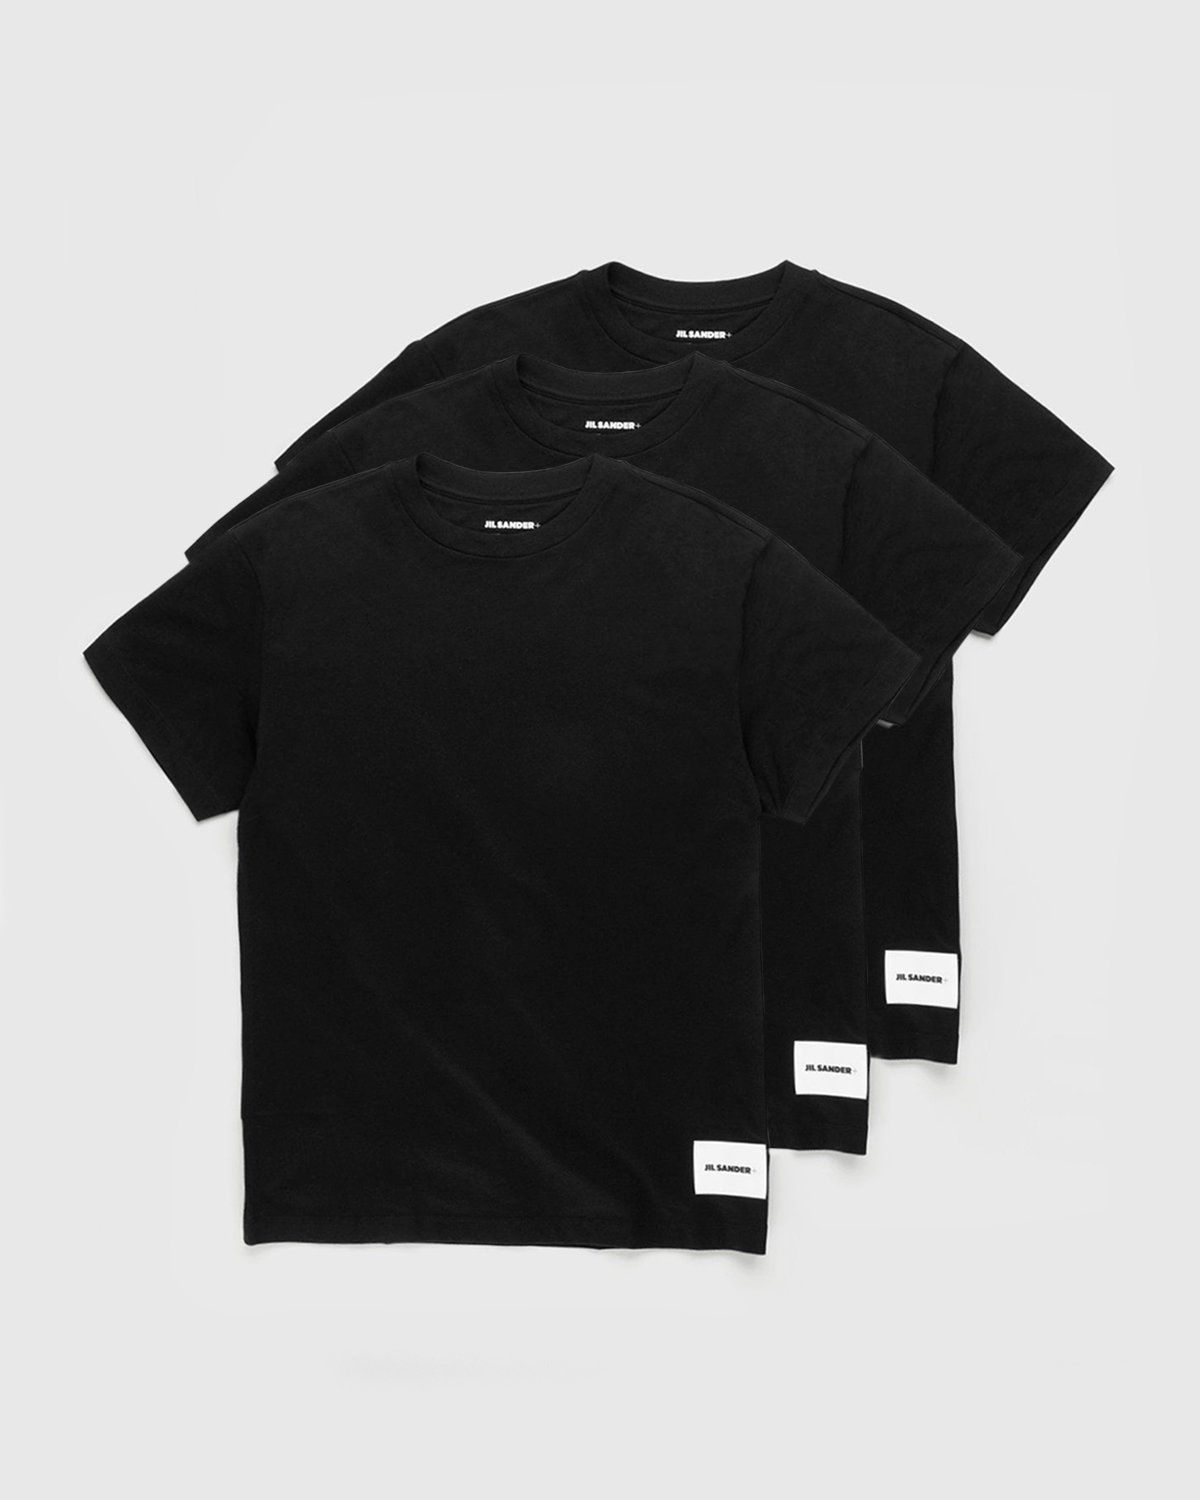 Jil Sander – T-Shirt 3-Pack Black - Tops - Black - Image 1